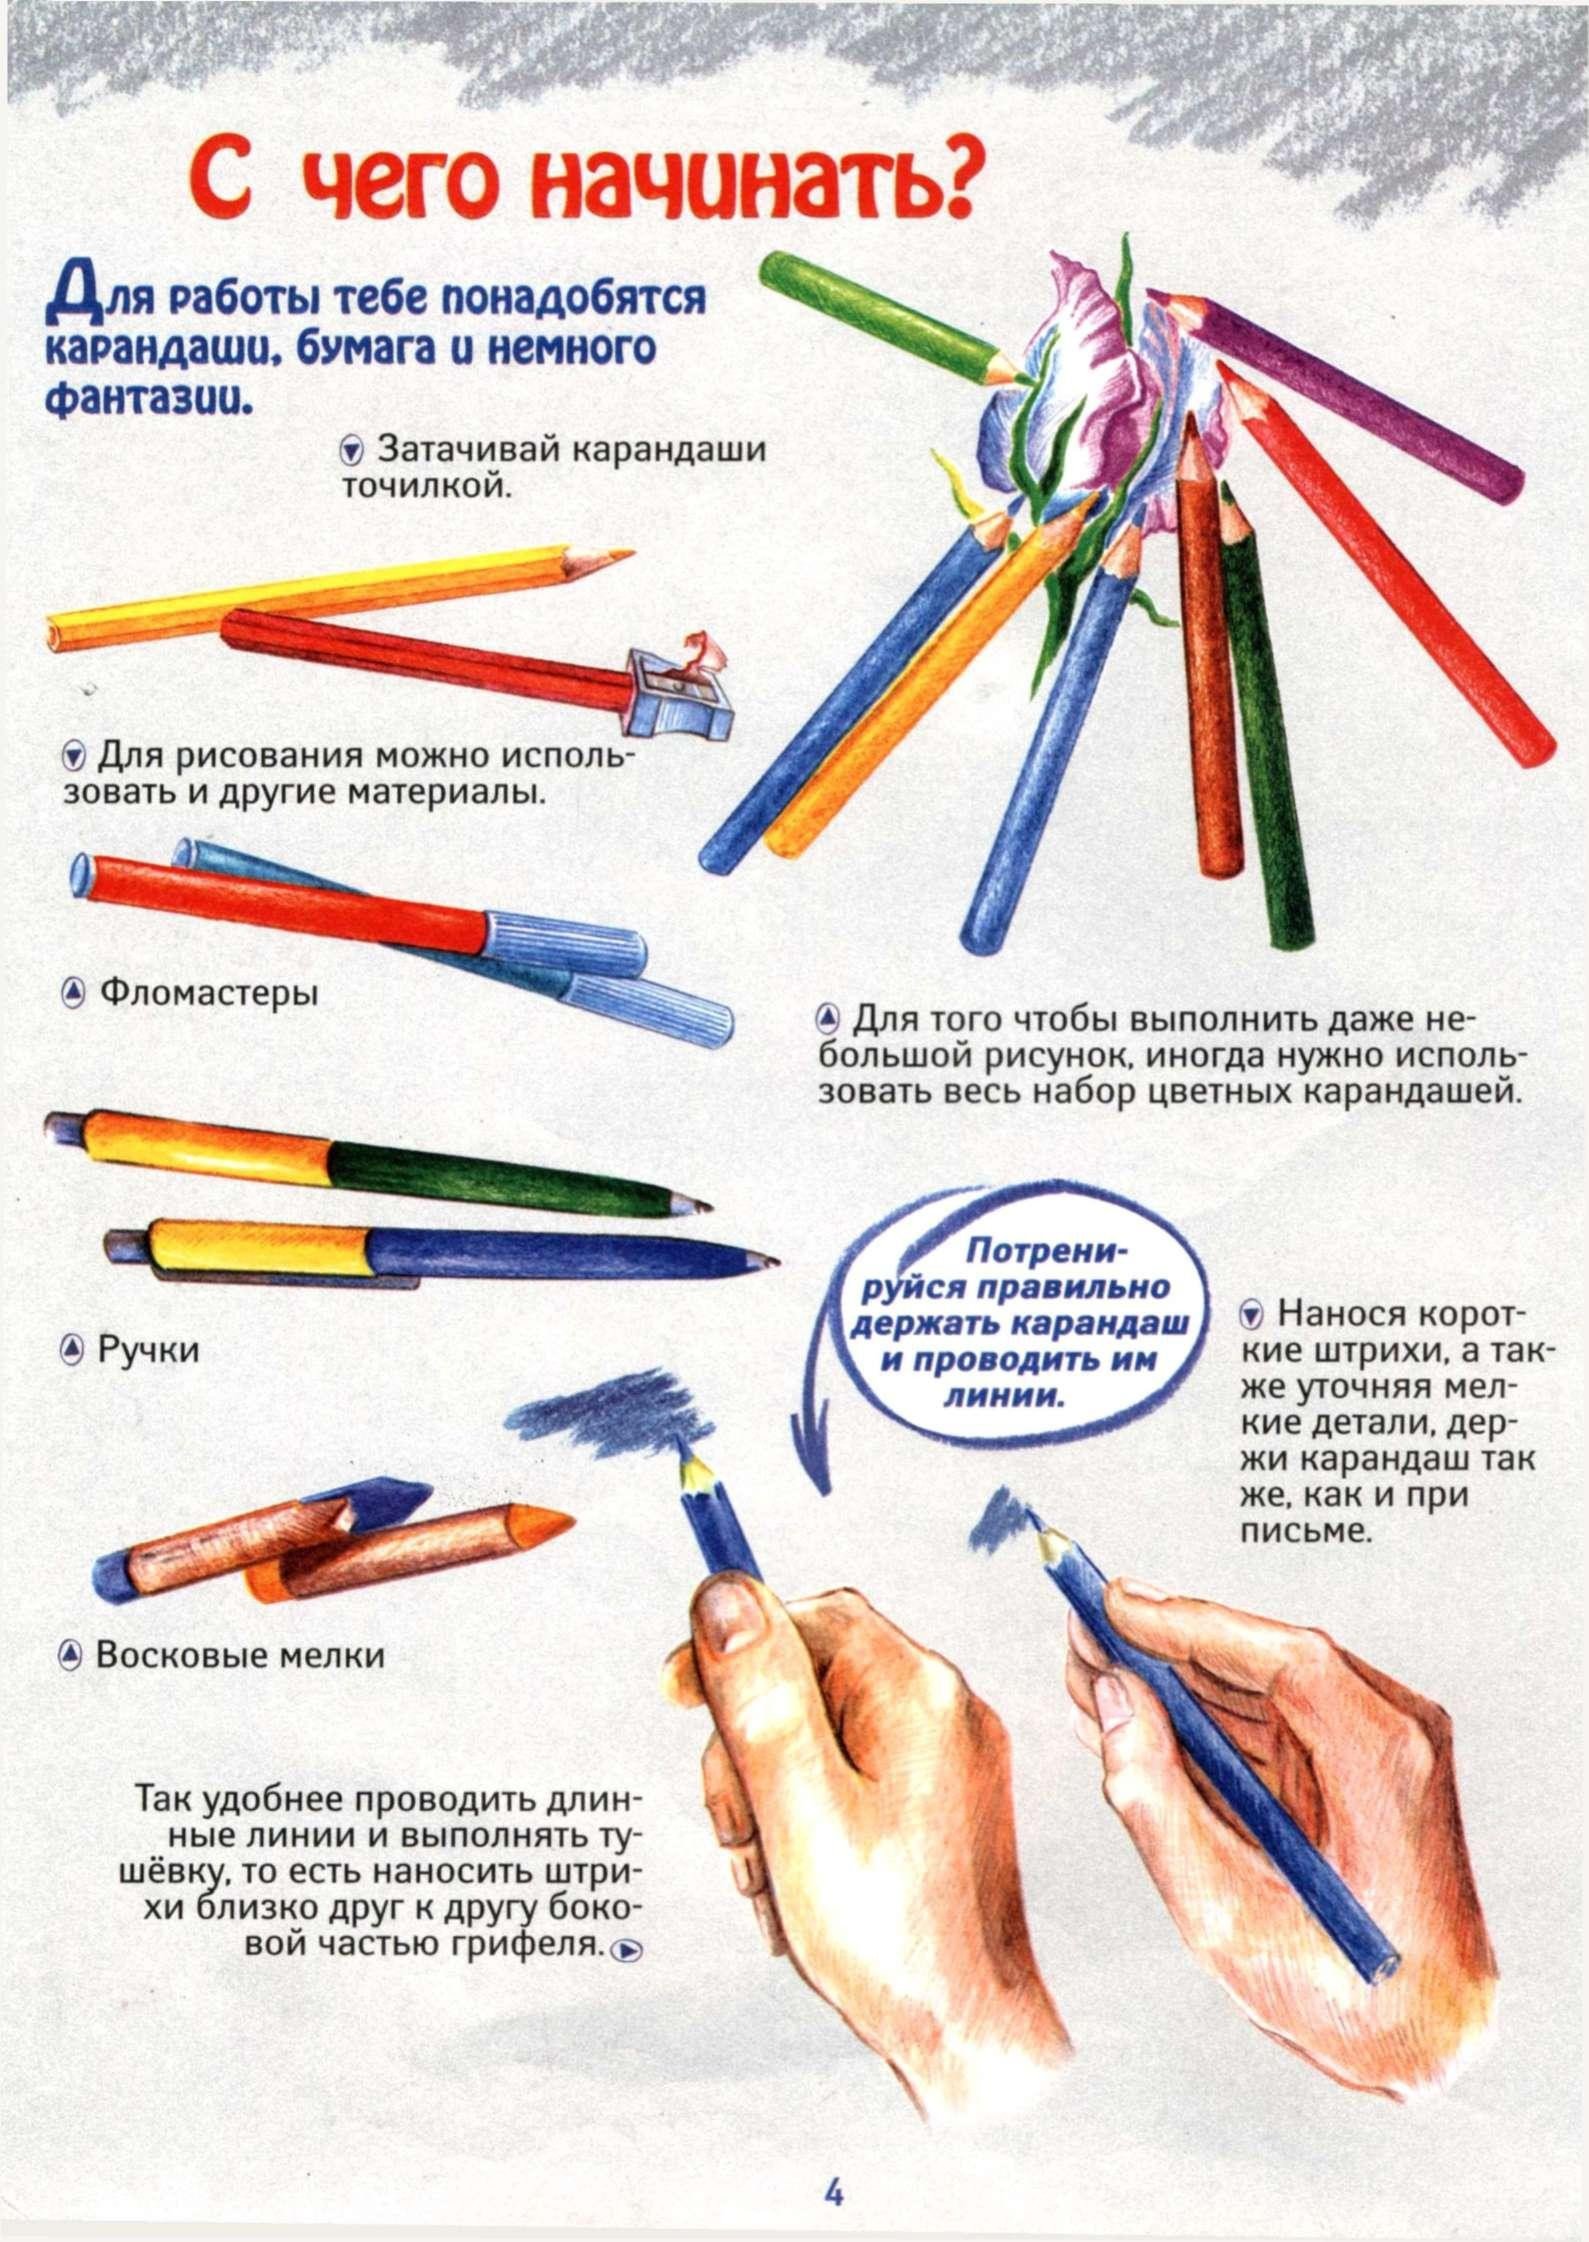 Как держать карандаш при рисовании